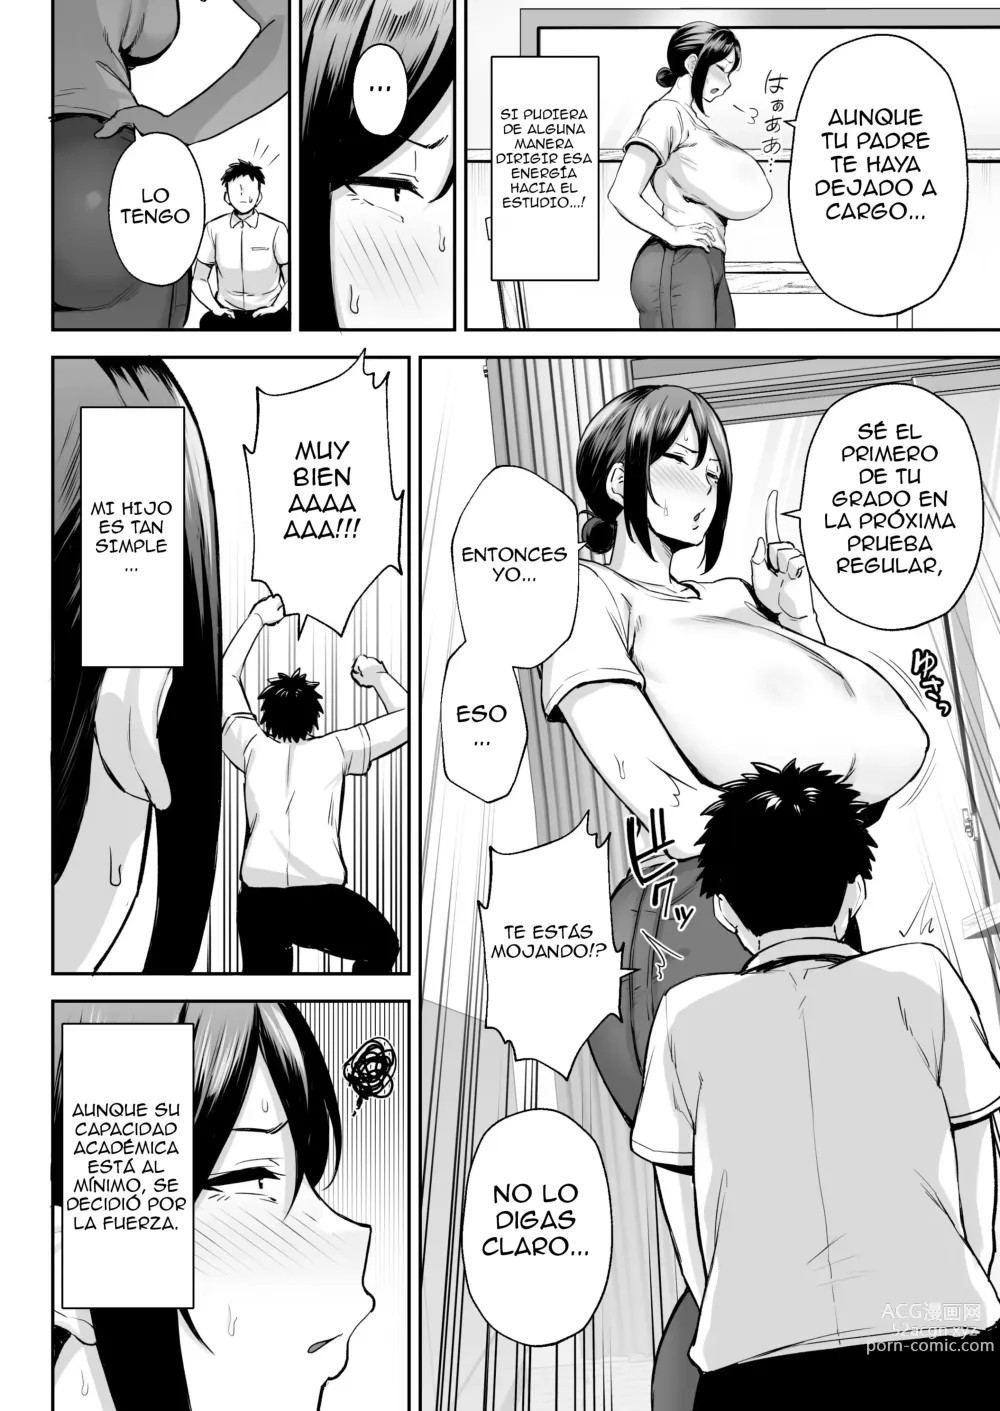 Page 7 of doujinshi La mujer más íntima y erótica, Miyuki. Soy madre, pero tengo problemas con mi hijo